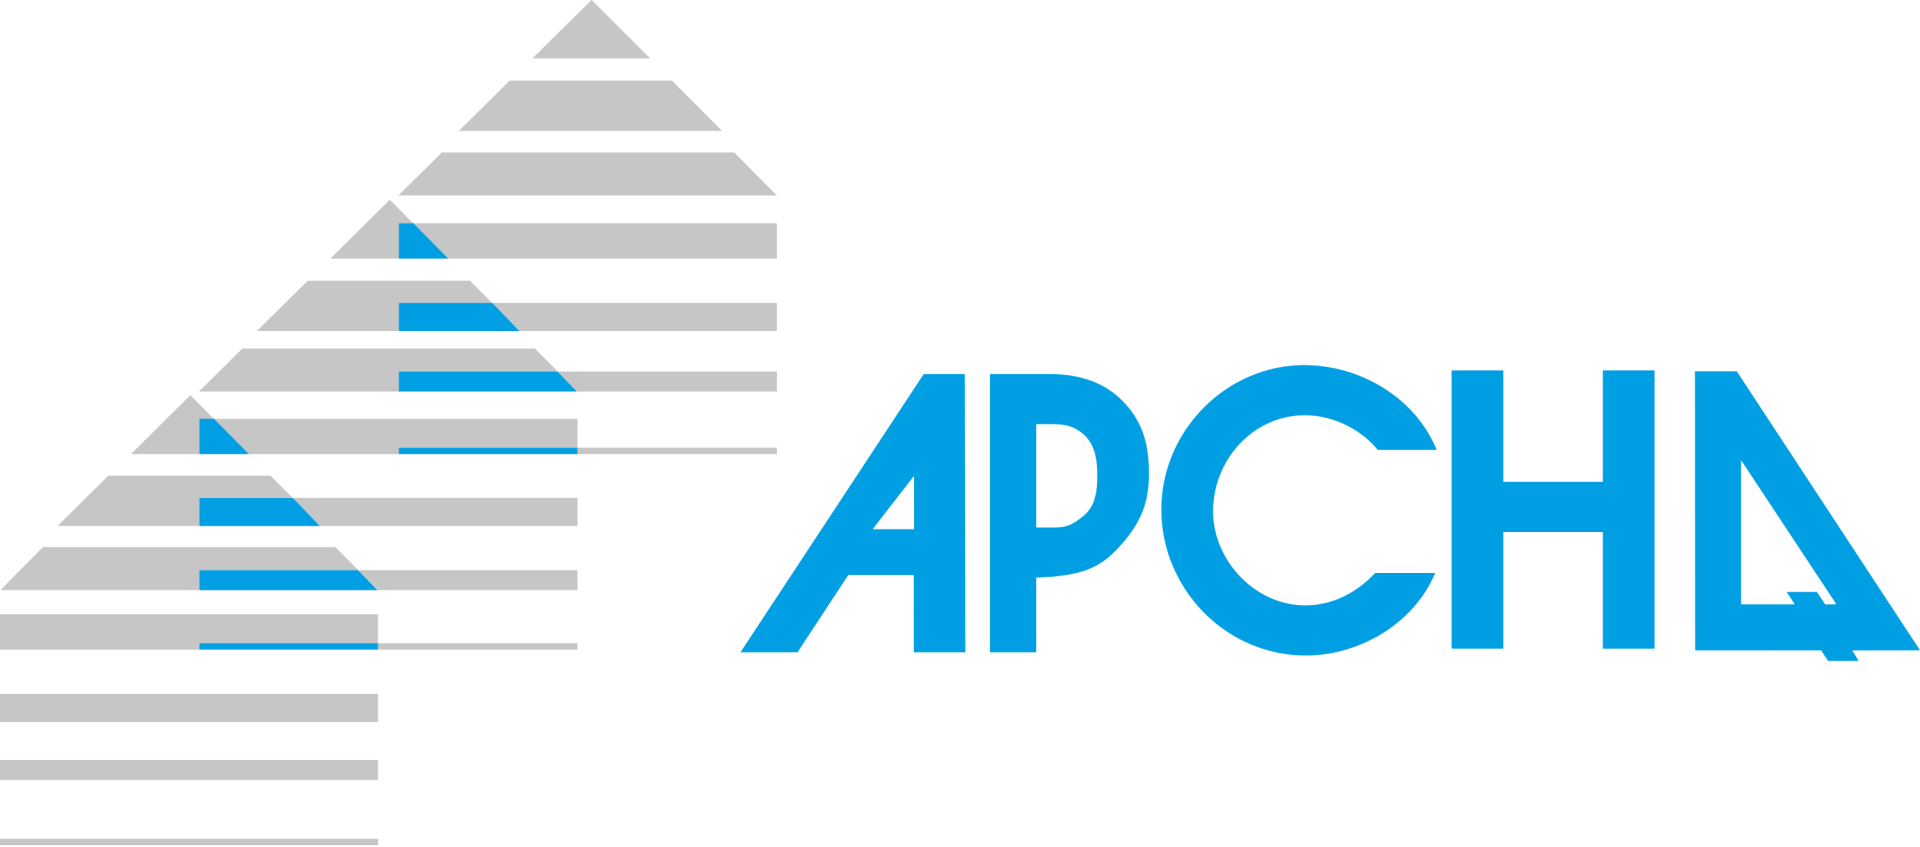 logo APCHQ